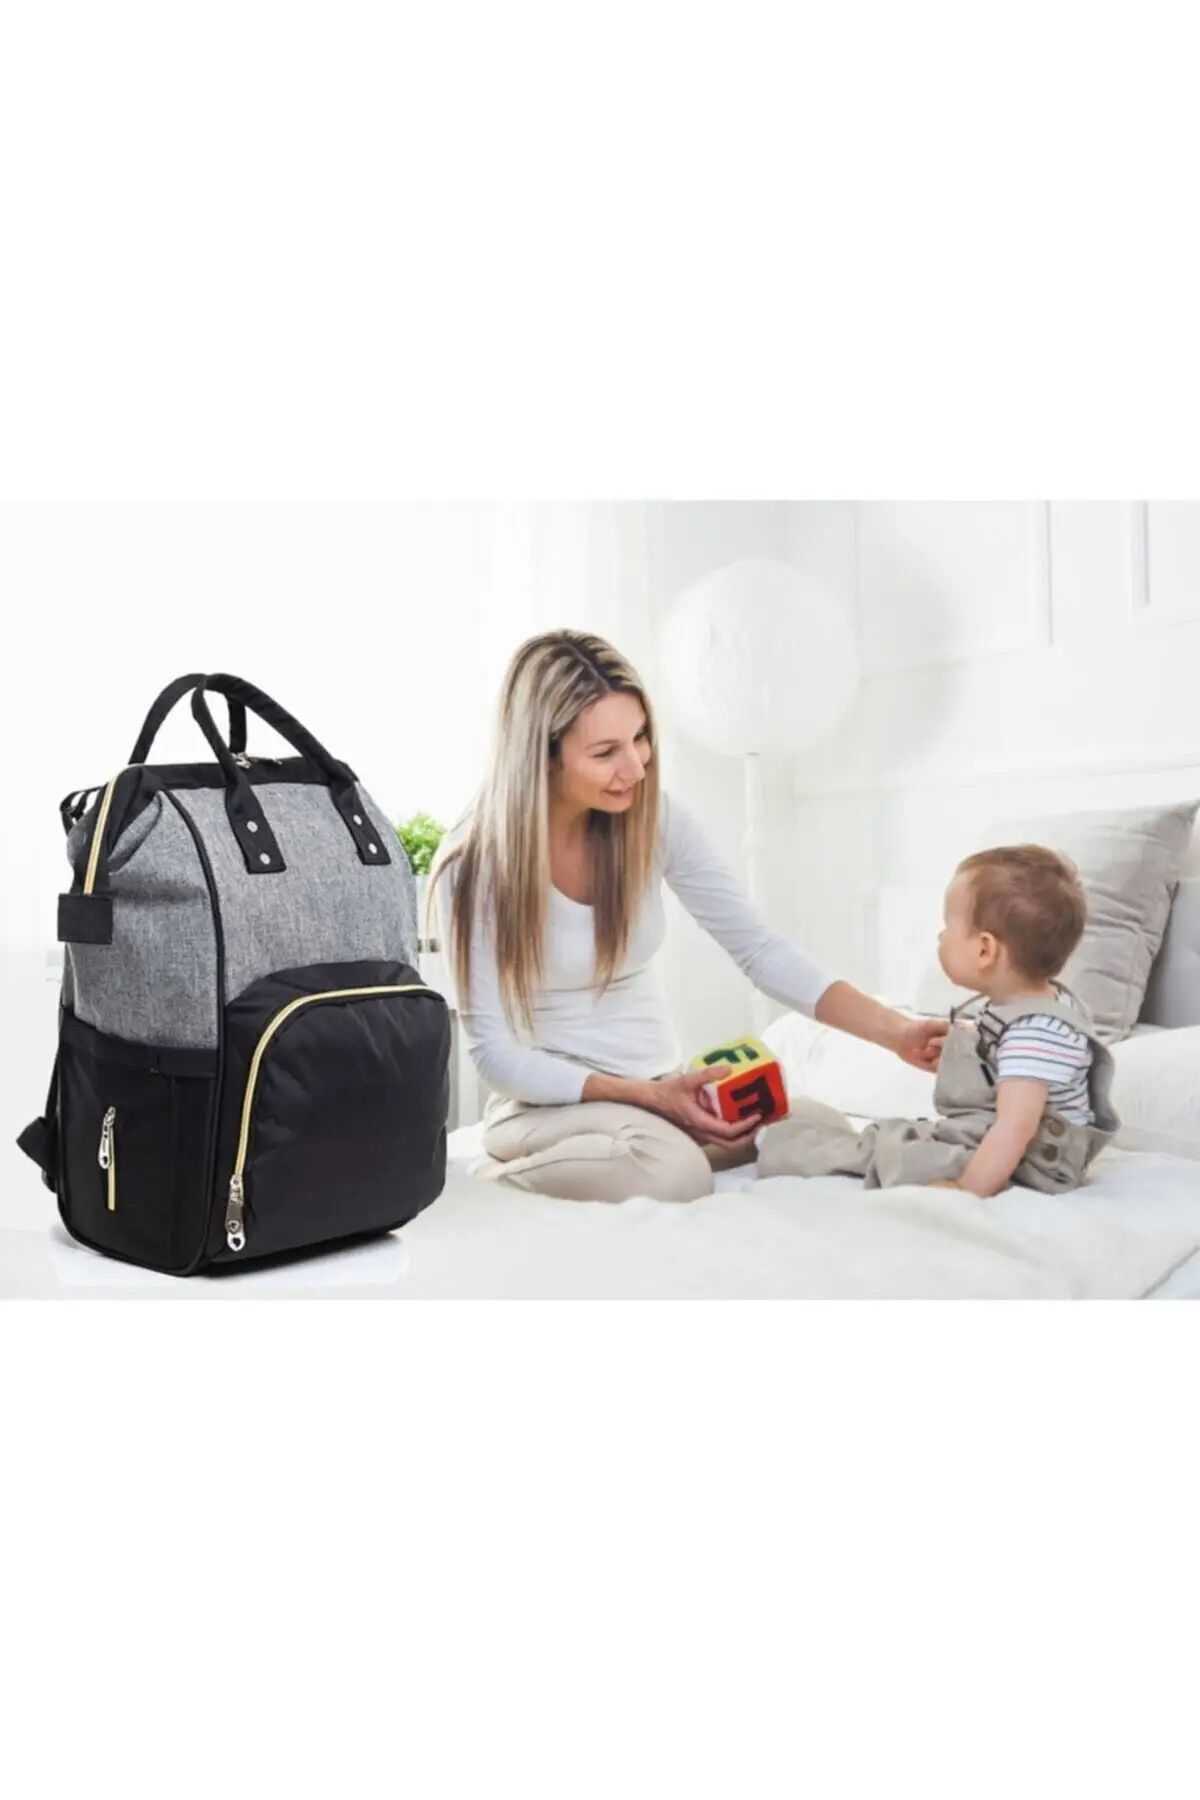 Детская сумка, детский рюкзак для мамы, черный, серый, золотой